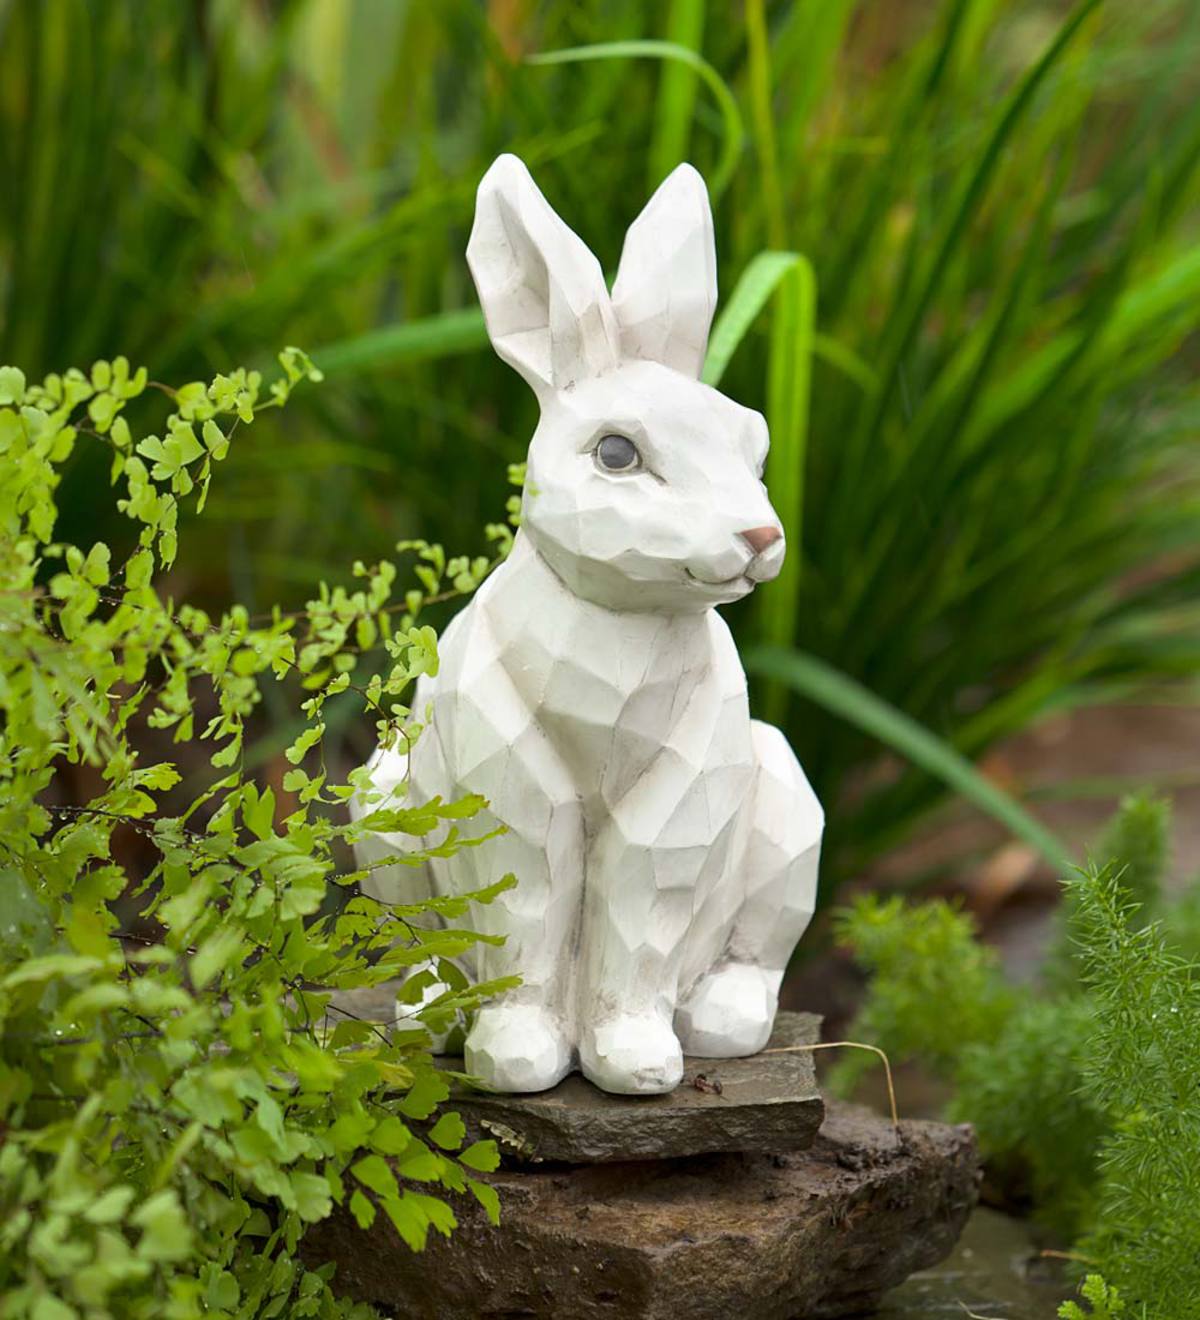 Woodcut-Style Rabbit Garden Statue